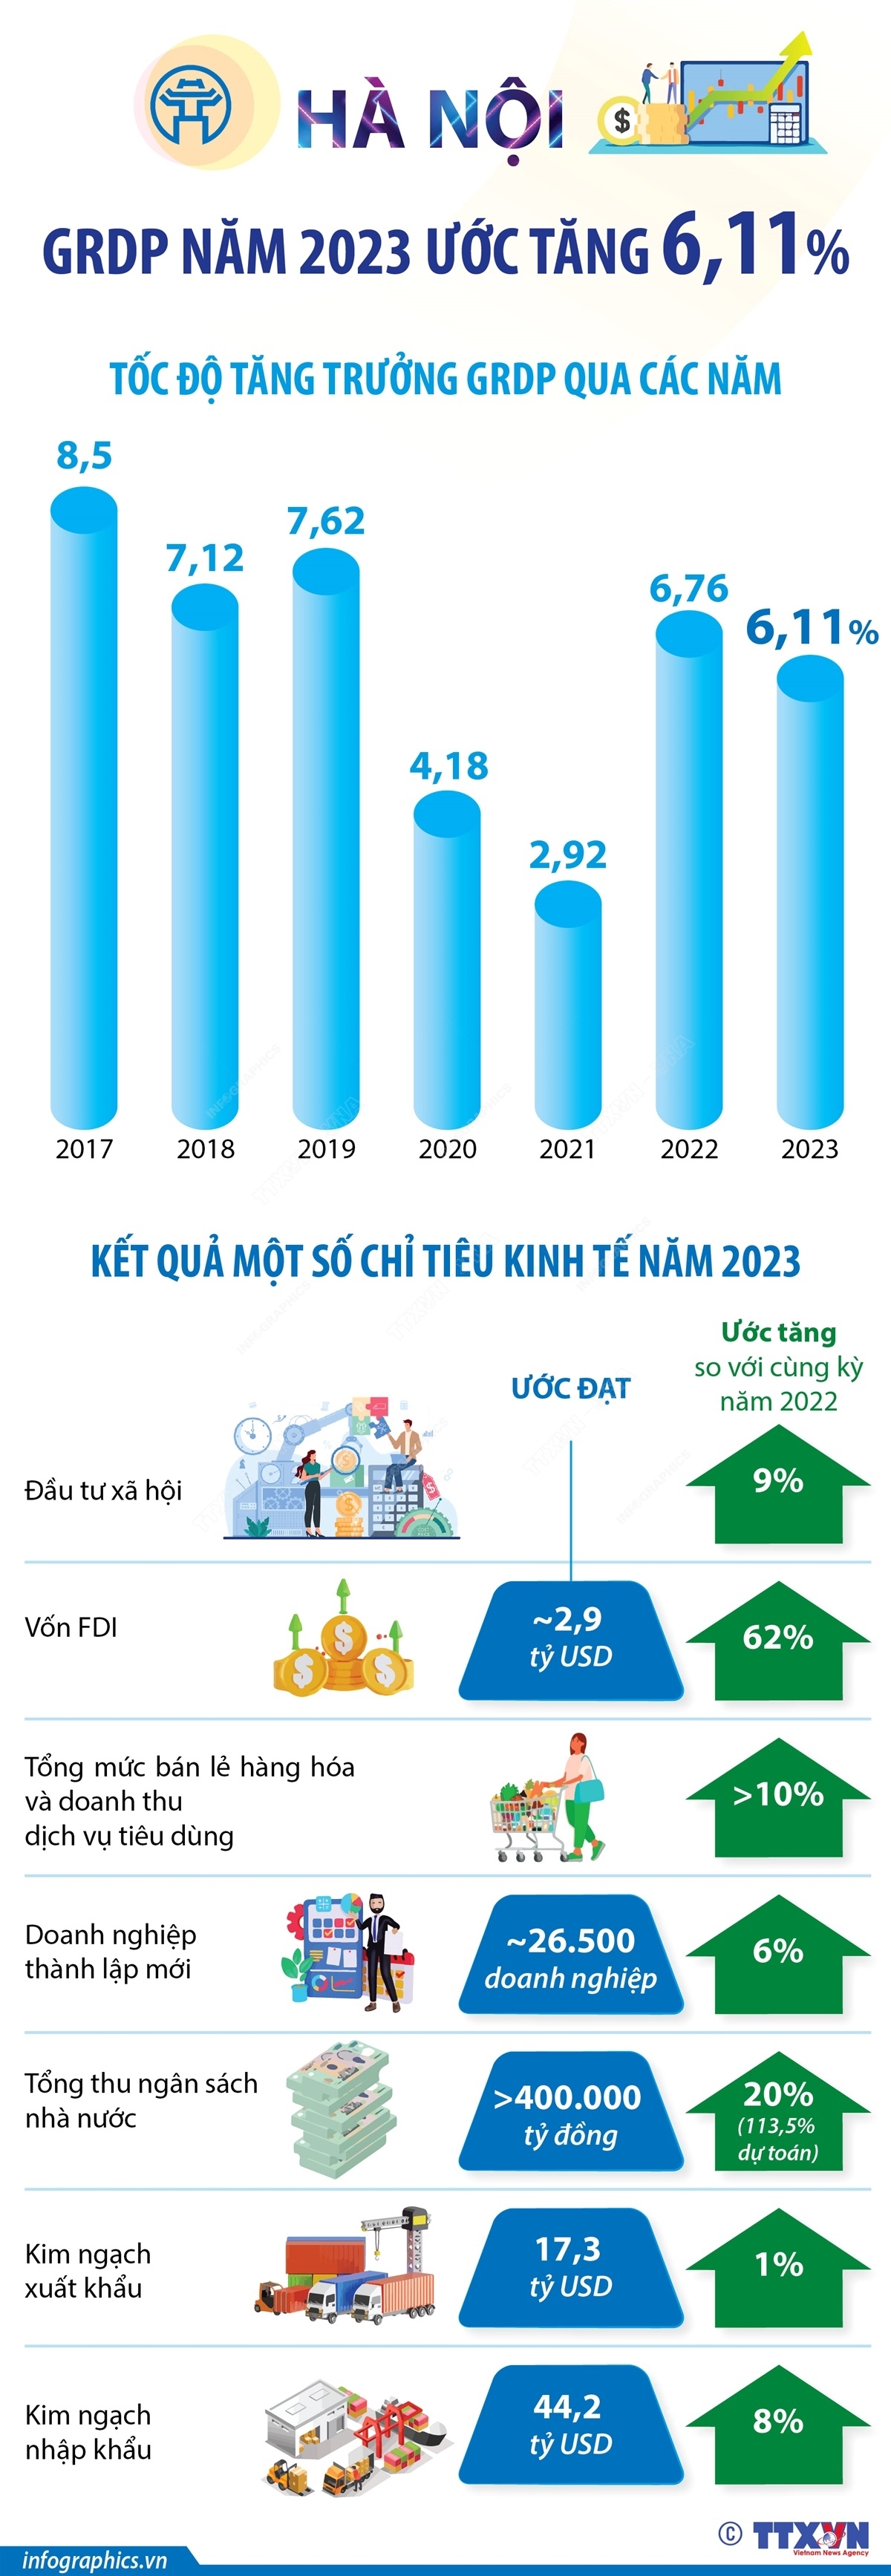 Hà Nội: Tổng sản phẩm trên địa bàn năm 2023 ước tăng 6,11%